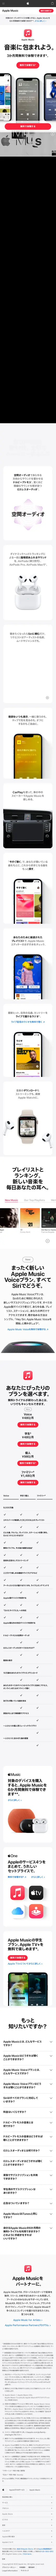 キャプチャ画面 会社名:Appleプロジェクト名:appleMUSIC 画面名:B デバイス名:SPカテゴリ:WEB・インターネットタグ:B,SP